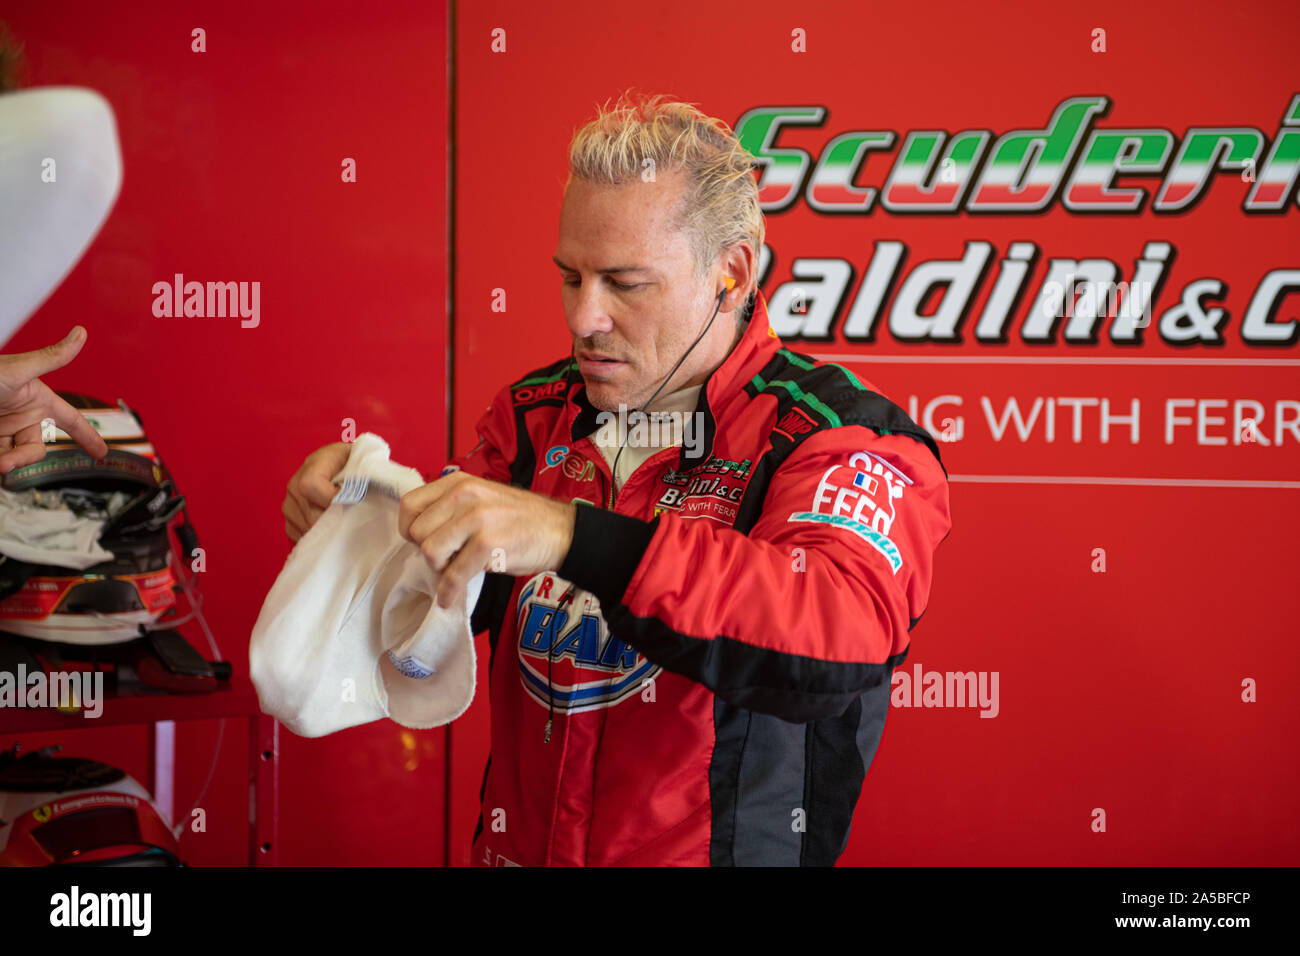 Circuito di Vallelunga, in Italia il 15 settembre 2019, Jacques Villeneuve famosa competizione di auto conducente in rosso paddock indossare equipaggiamento di sicurezza usura di gara Foto Stock